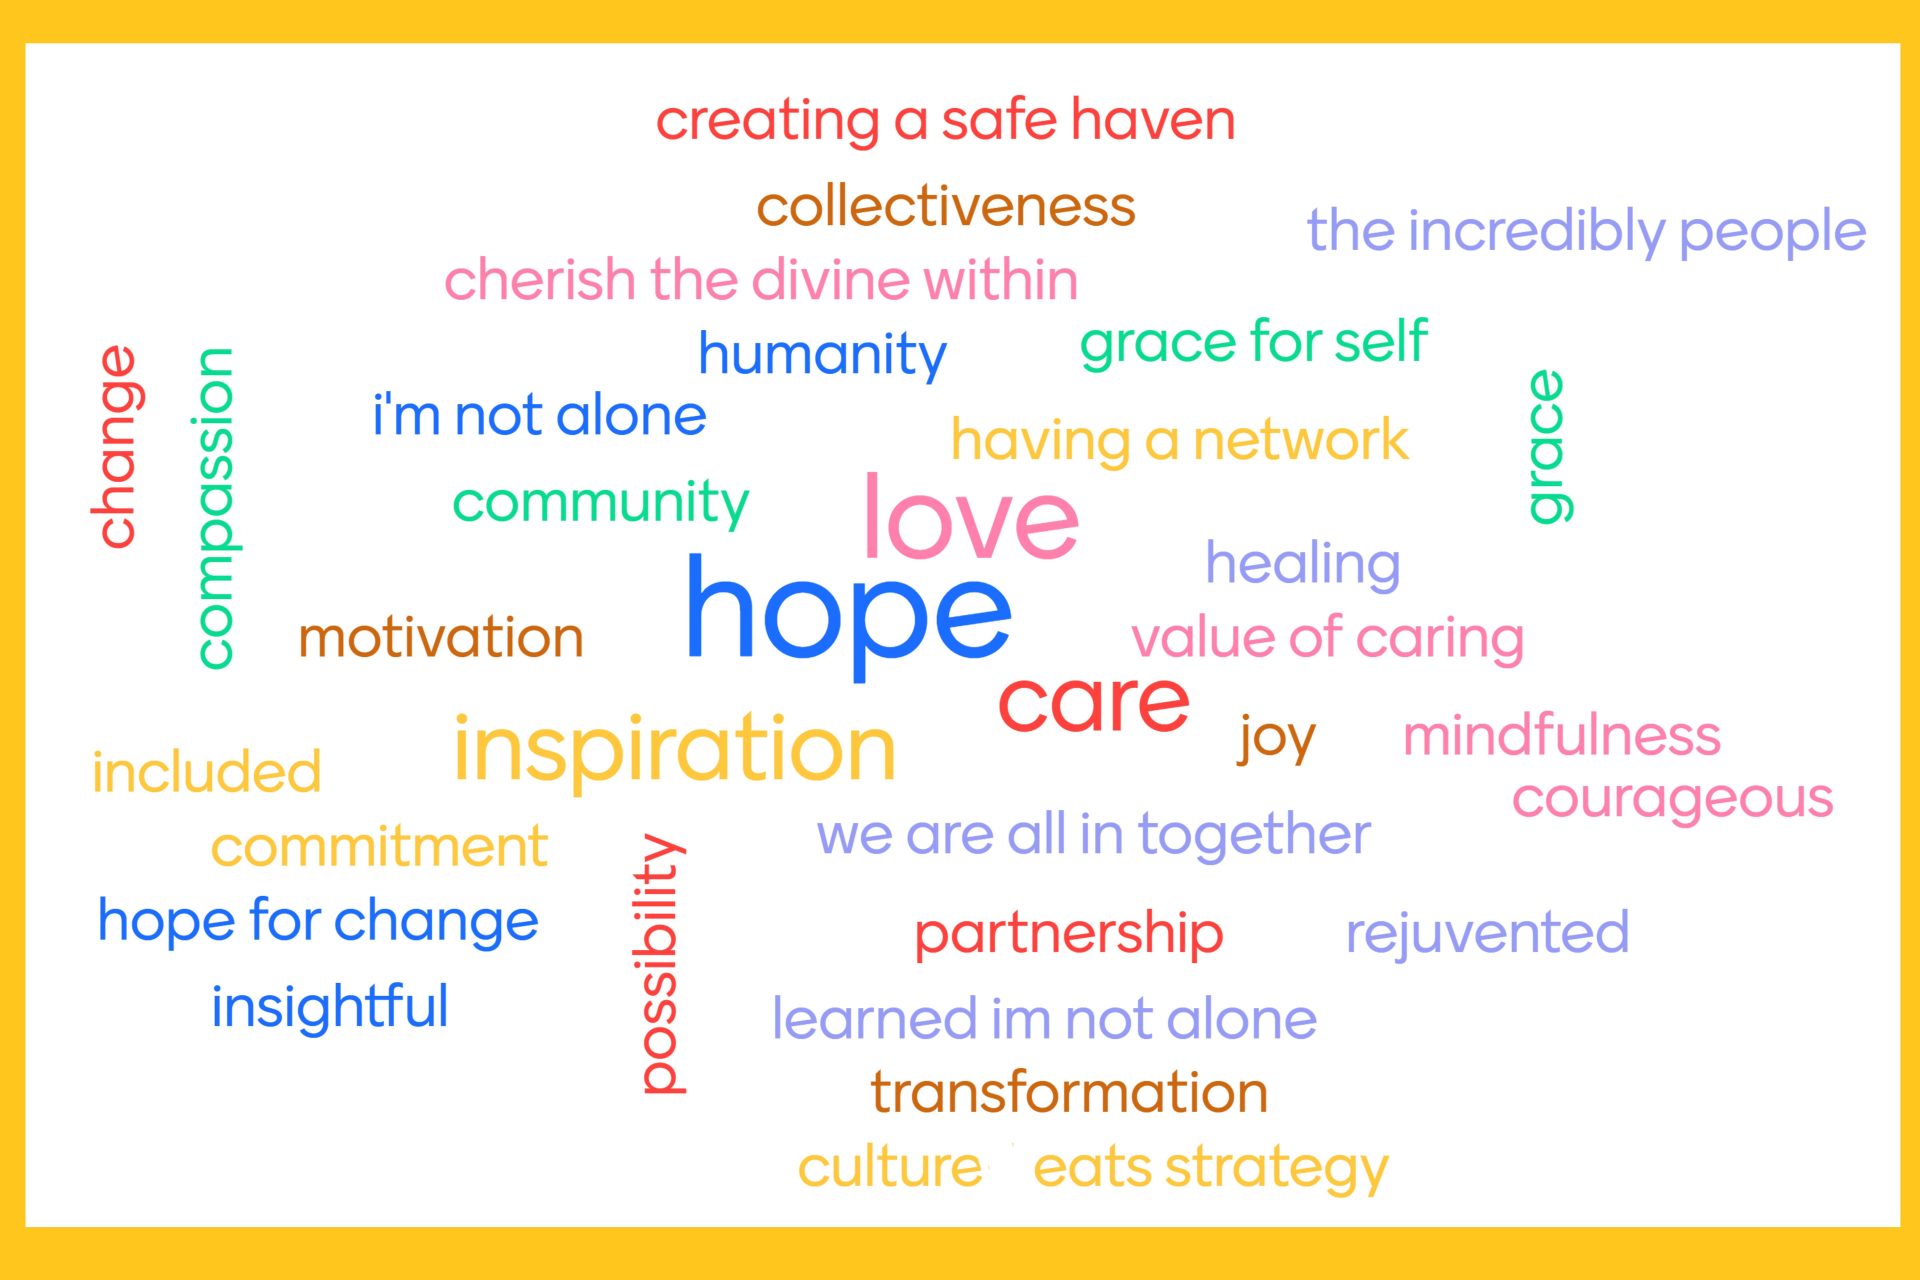 Mentimeter word cloud showing words like hope, love, care, joy